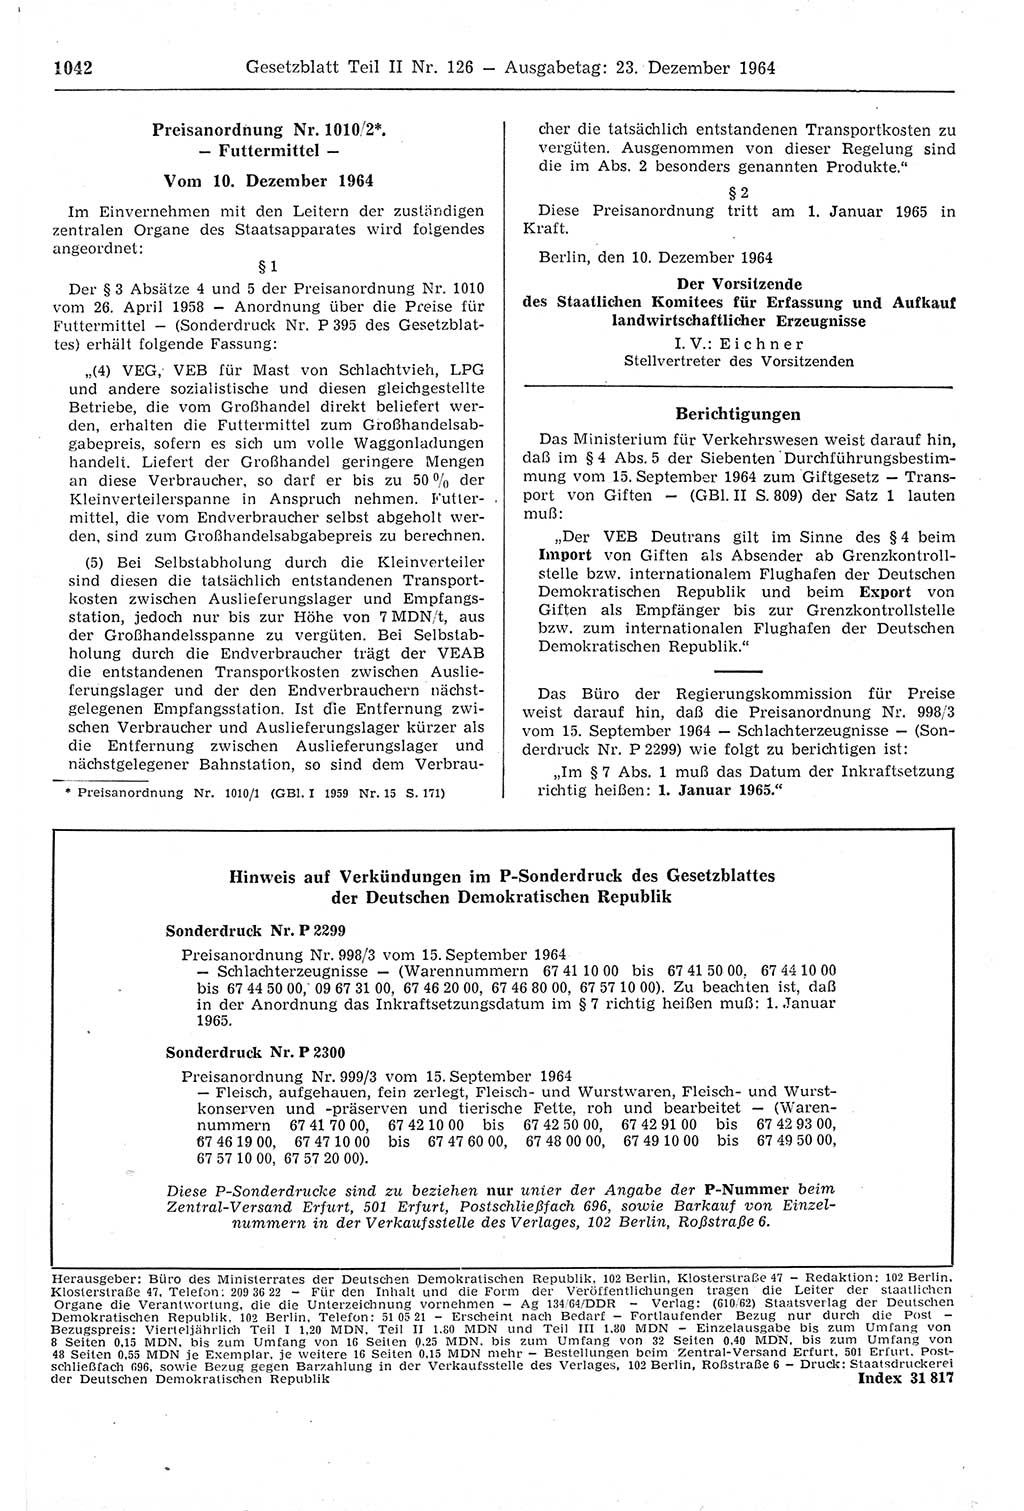 Gesetzblatt (GBl.) der Deutschen Demokratischen Republik (DDR) Teil ⅠⅠ 1964, Seite 1042 (GBl. DDR ⅠⅠ 1964, S. 1042)